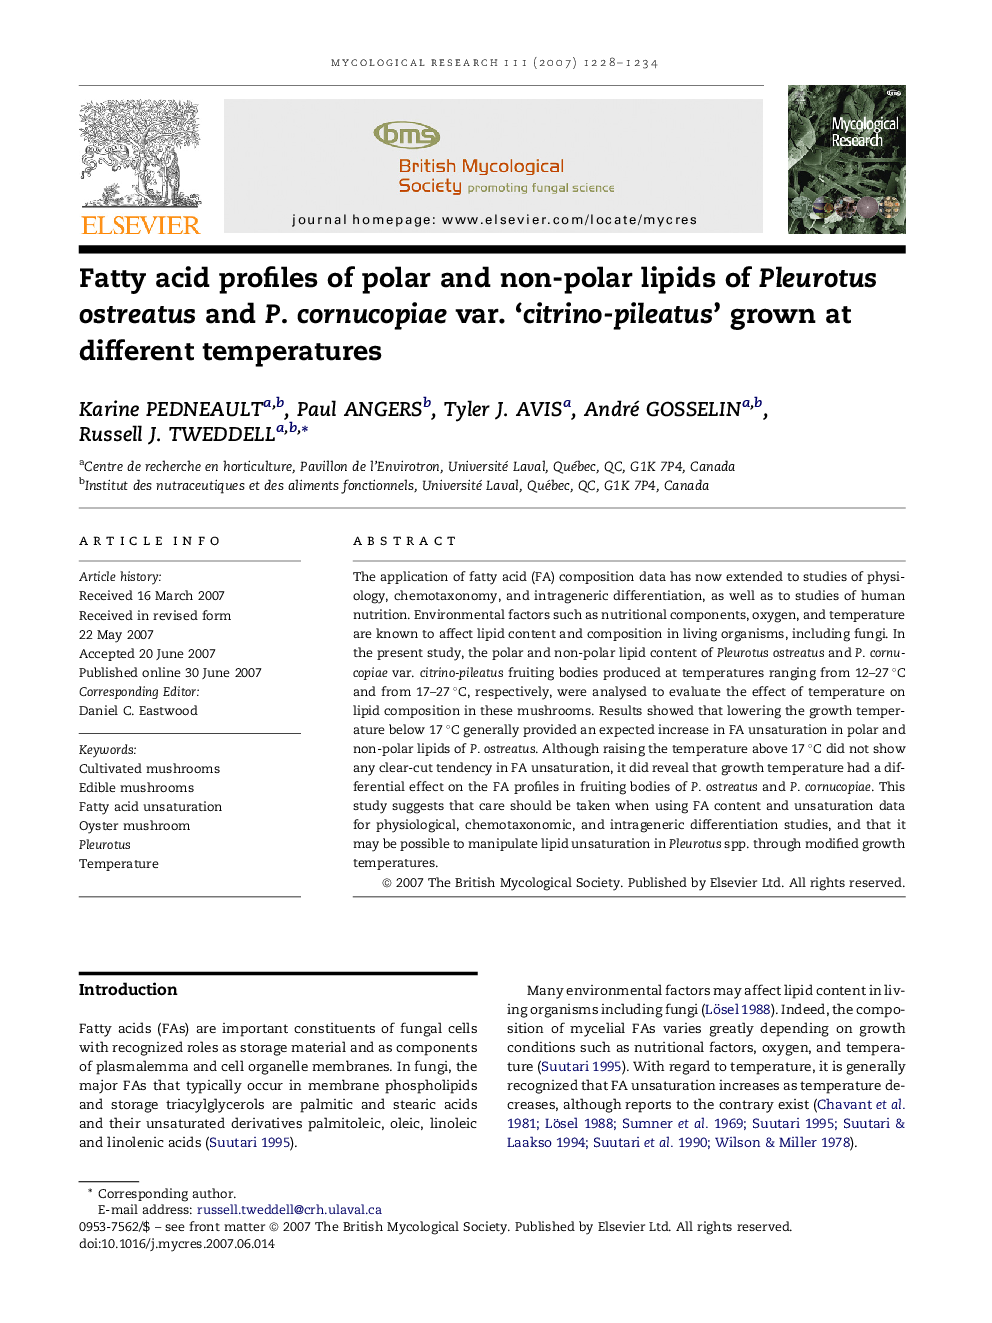 Fatty acid profiles of polar and non-polar lipids of Pleurotus ostreatus and P. cornucopiae var. ‘citrino-pileatus’ grown at different temperatures